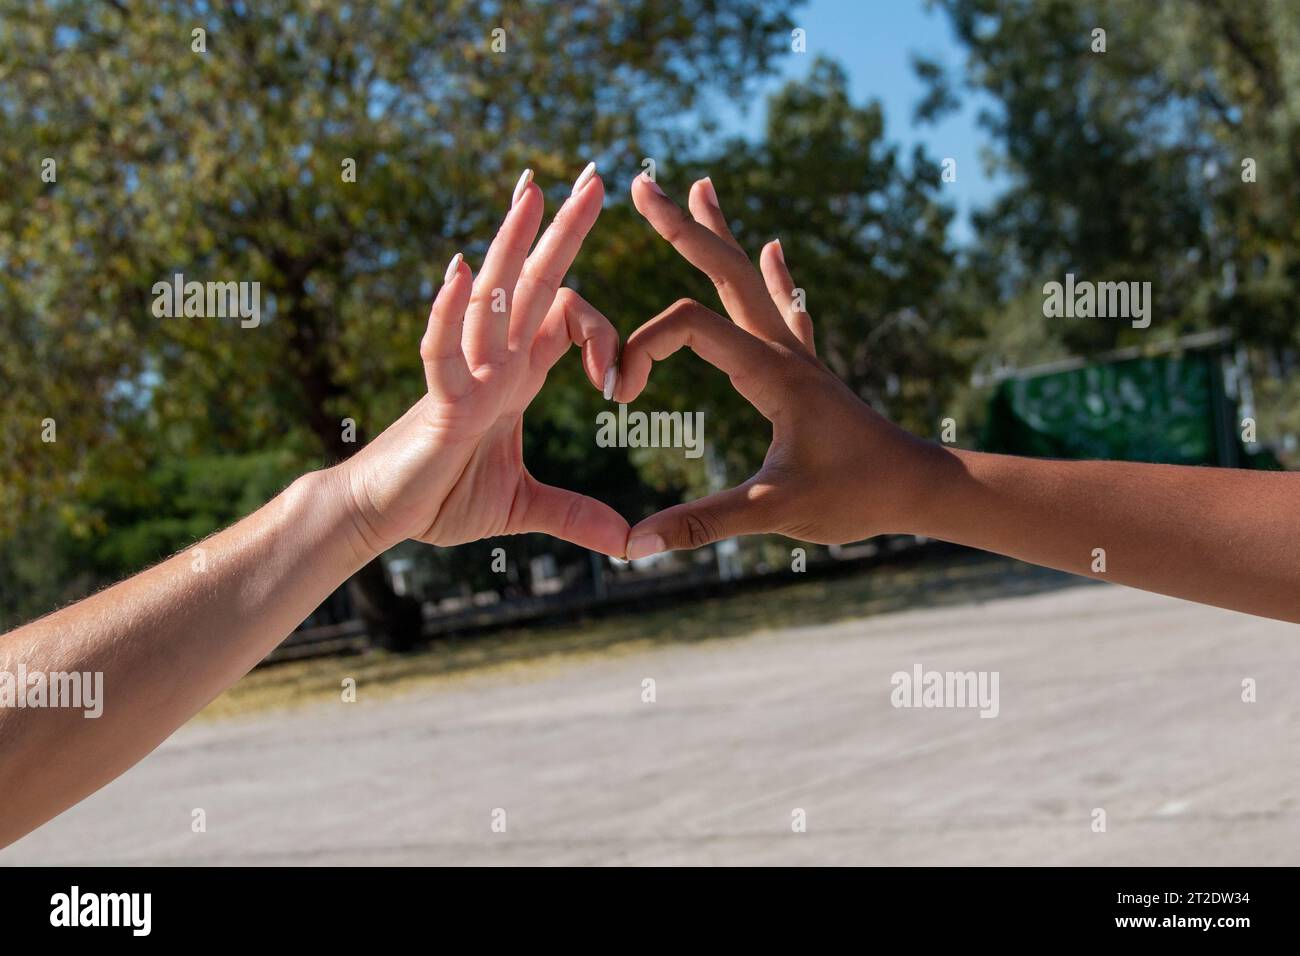 Mains de différentes ethnies, africaines et européennes, formant un cœur avec leurs doigts. Concept d'amour, d'amitié, d'égalité Banque D'Images